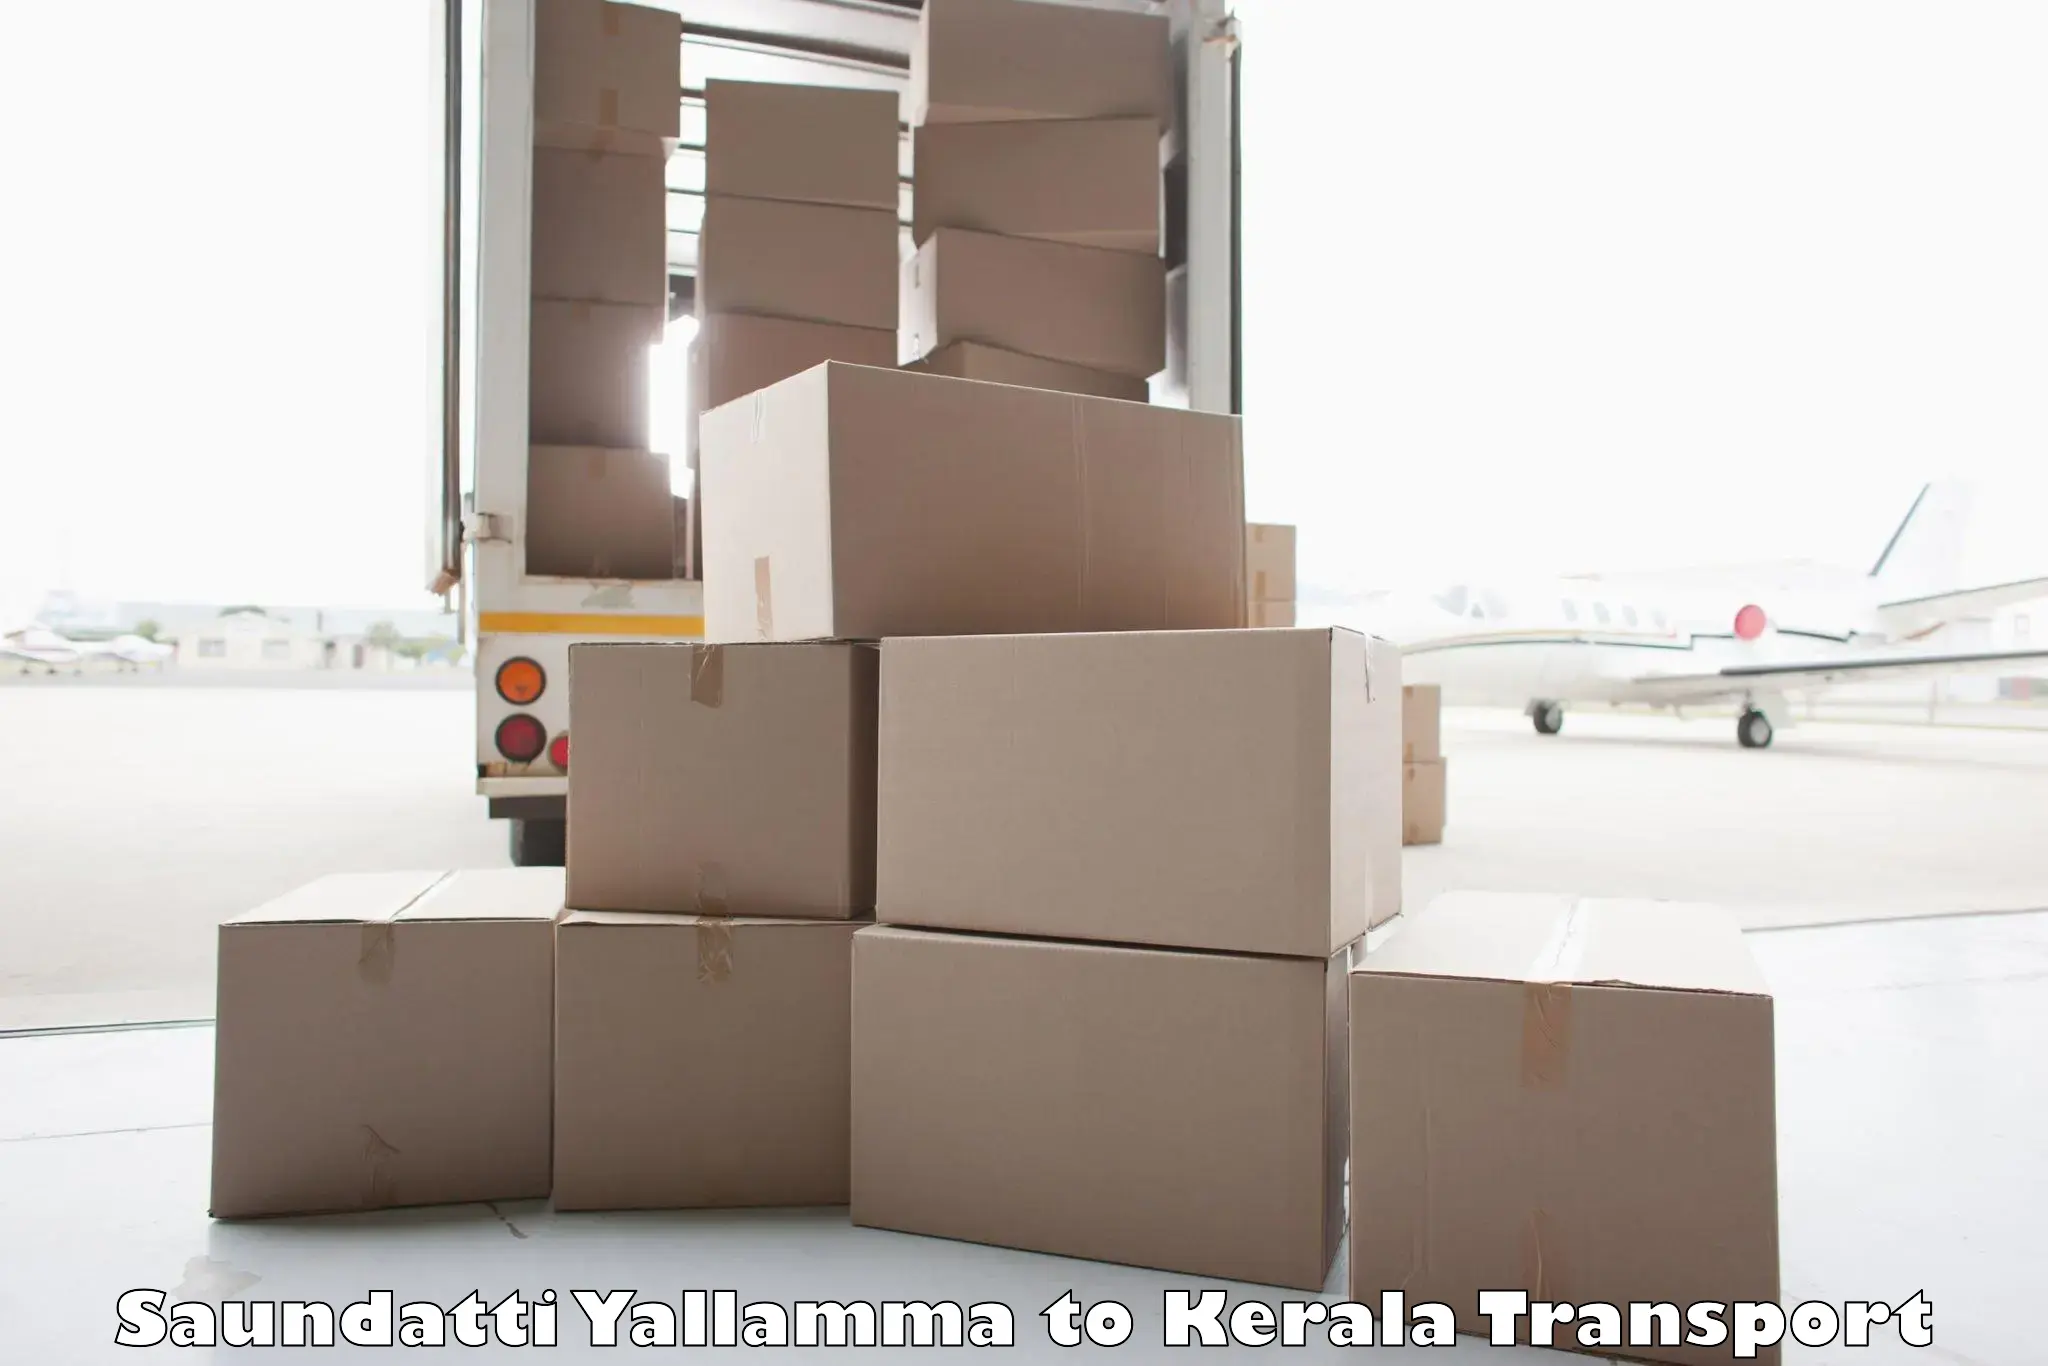 Air freight transport services Saundatti Yallamma to Guruvayur